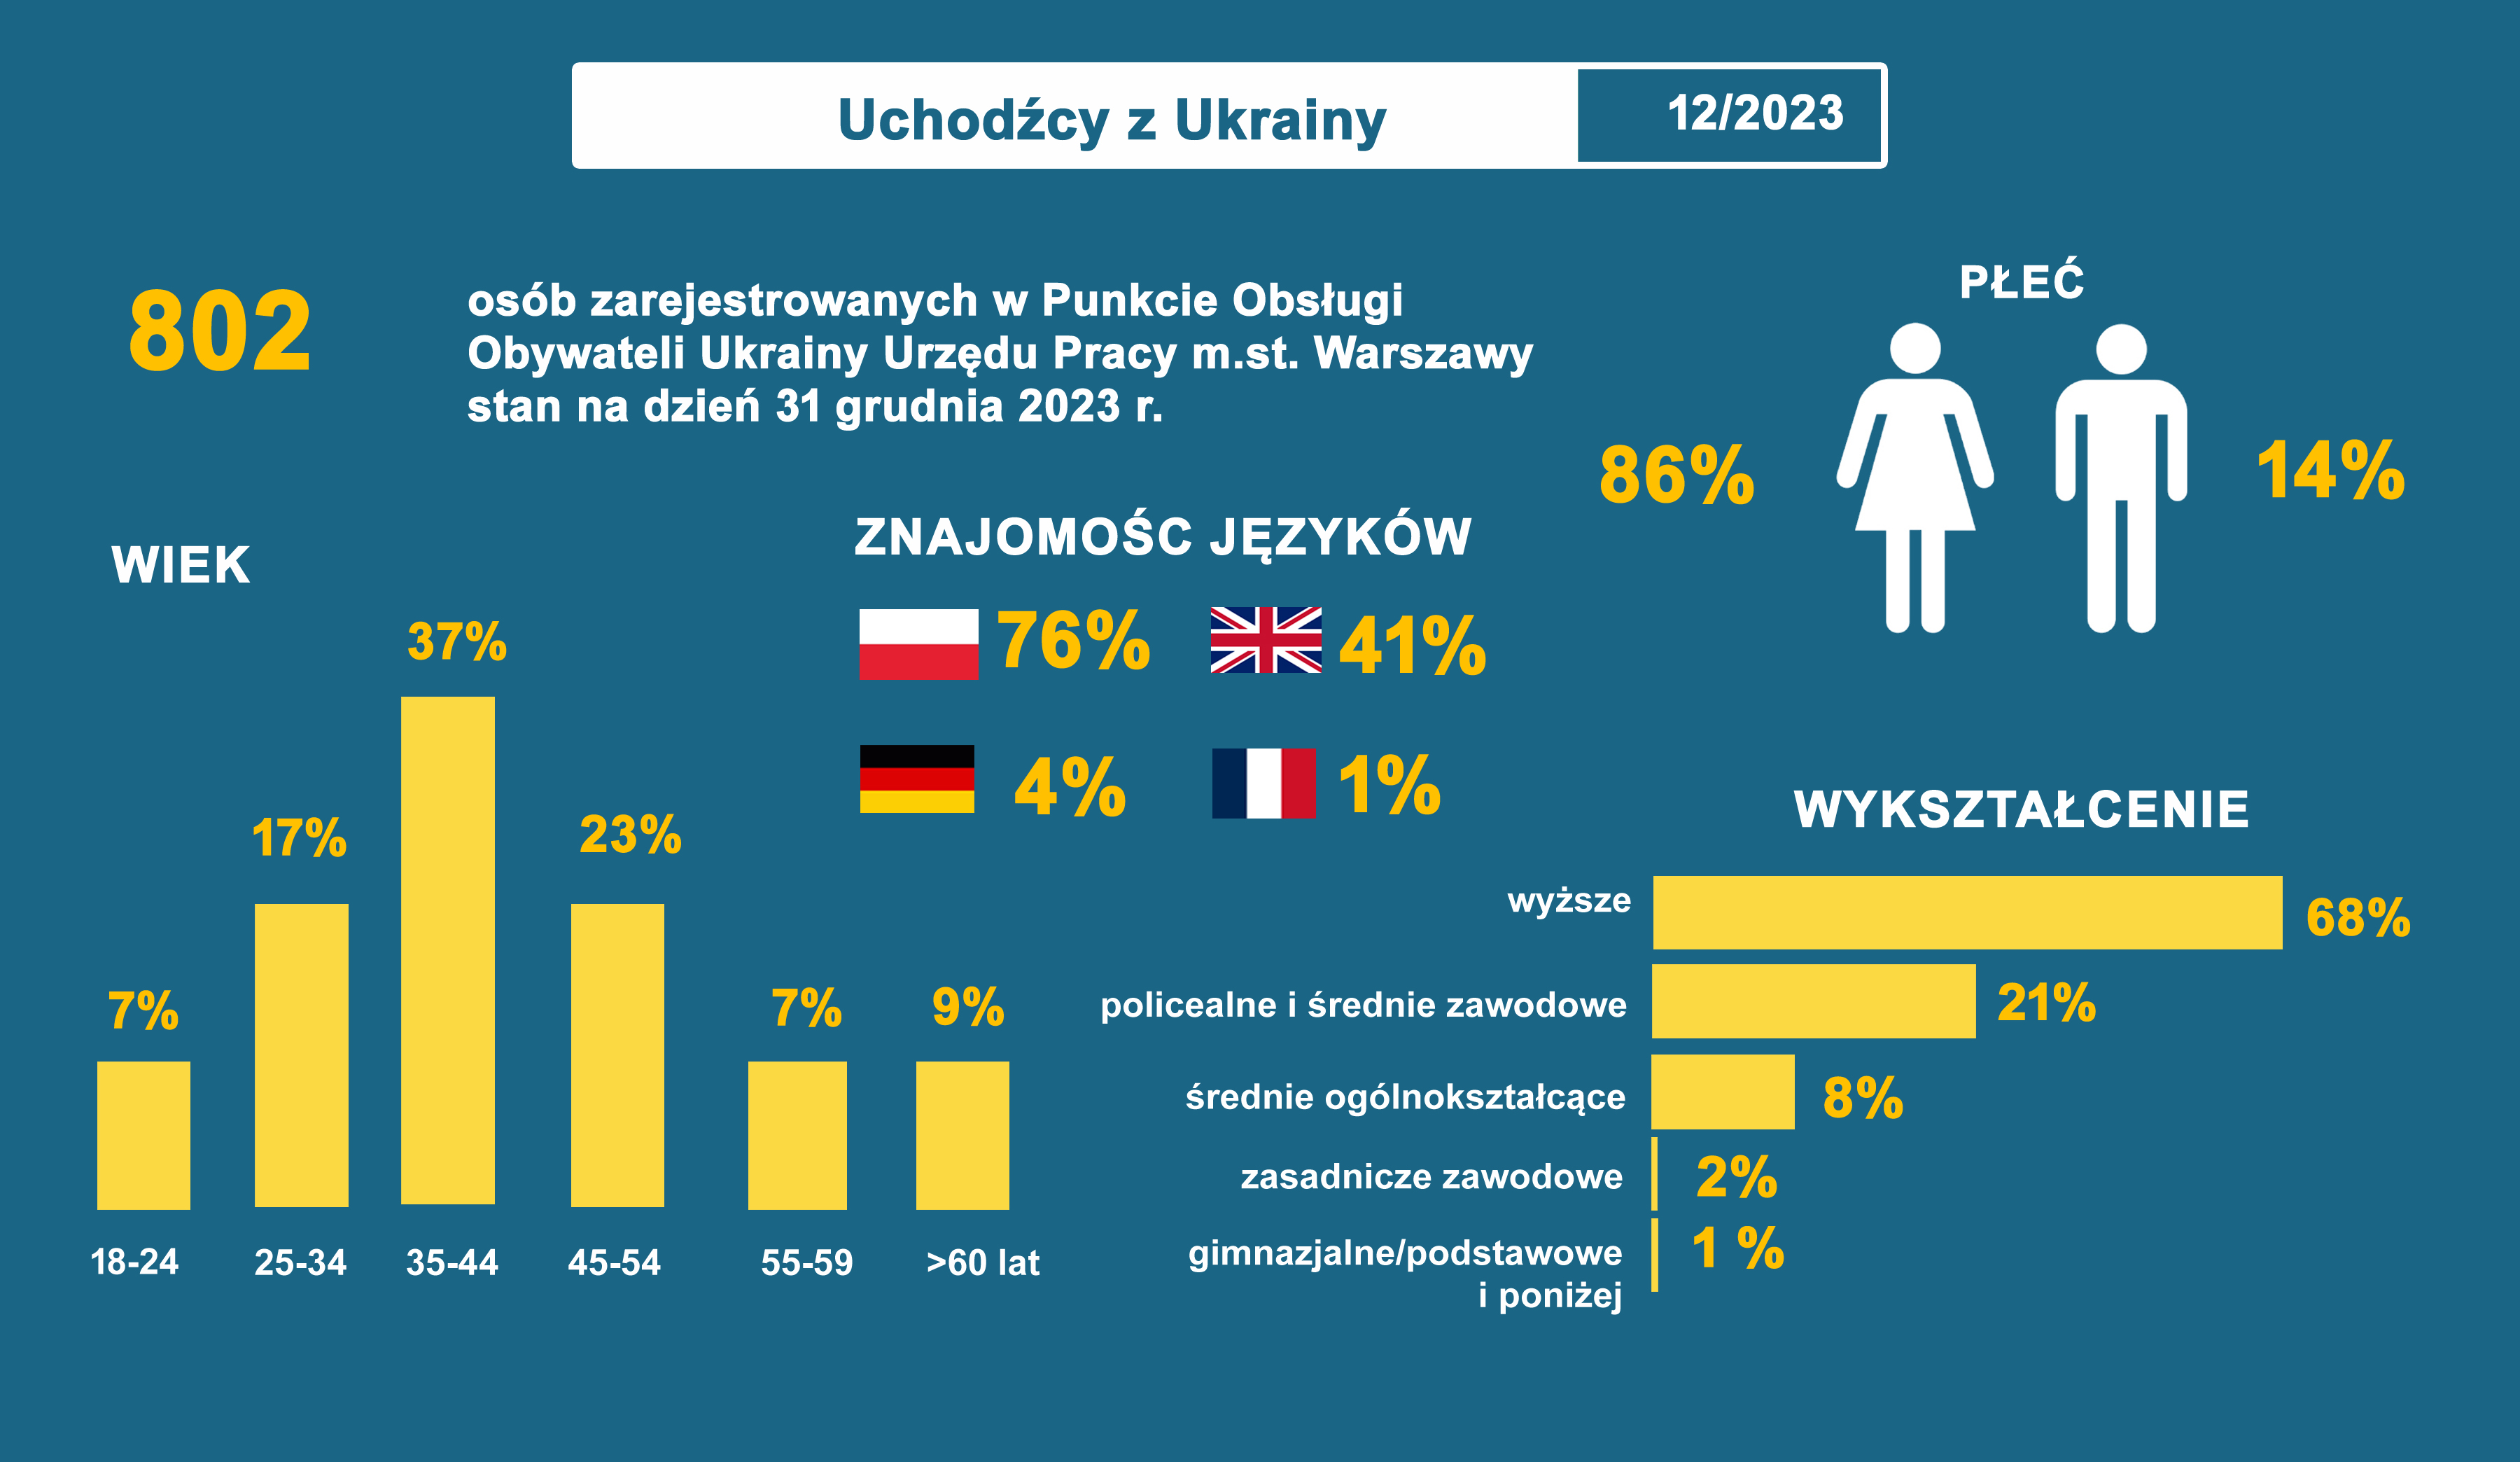 Rynek Pracy w Warszawie grudzień 2023 - infografika